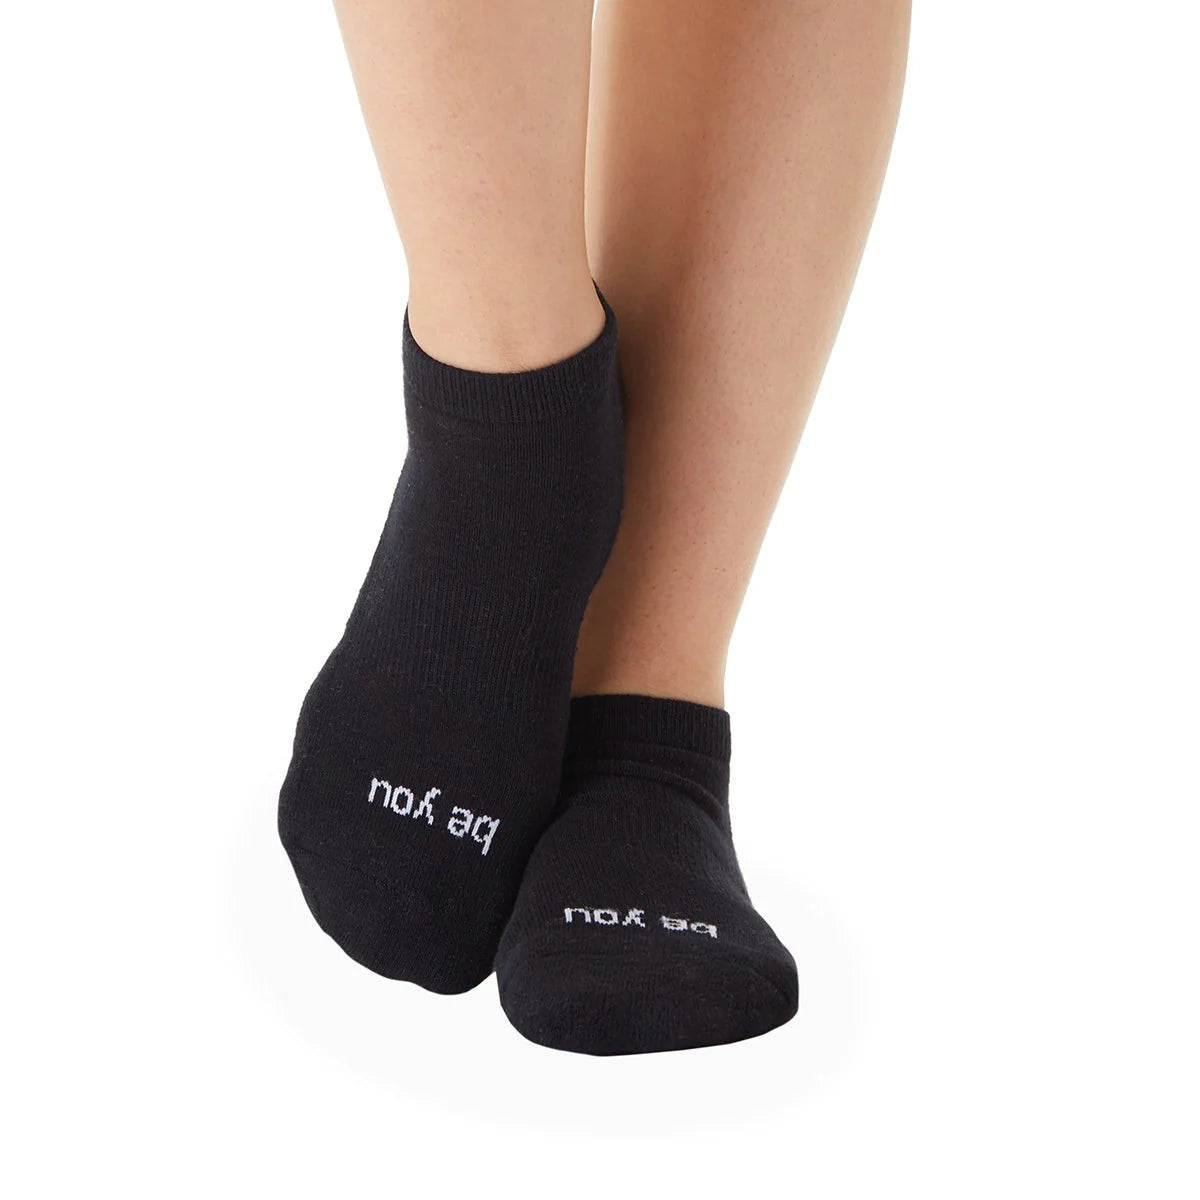 Mantra Box Grip Socks - Sticky Be - simplyWORKOUT – SIMPLYWORKOUT